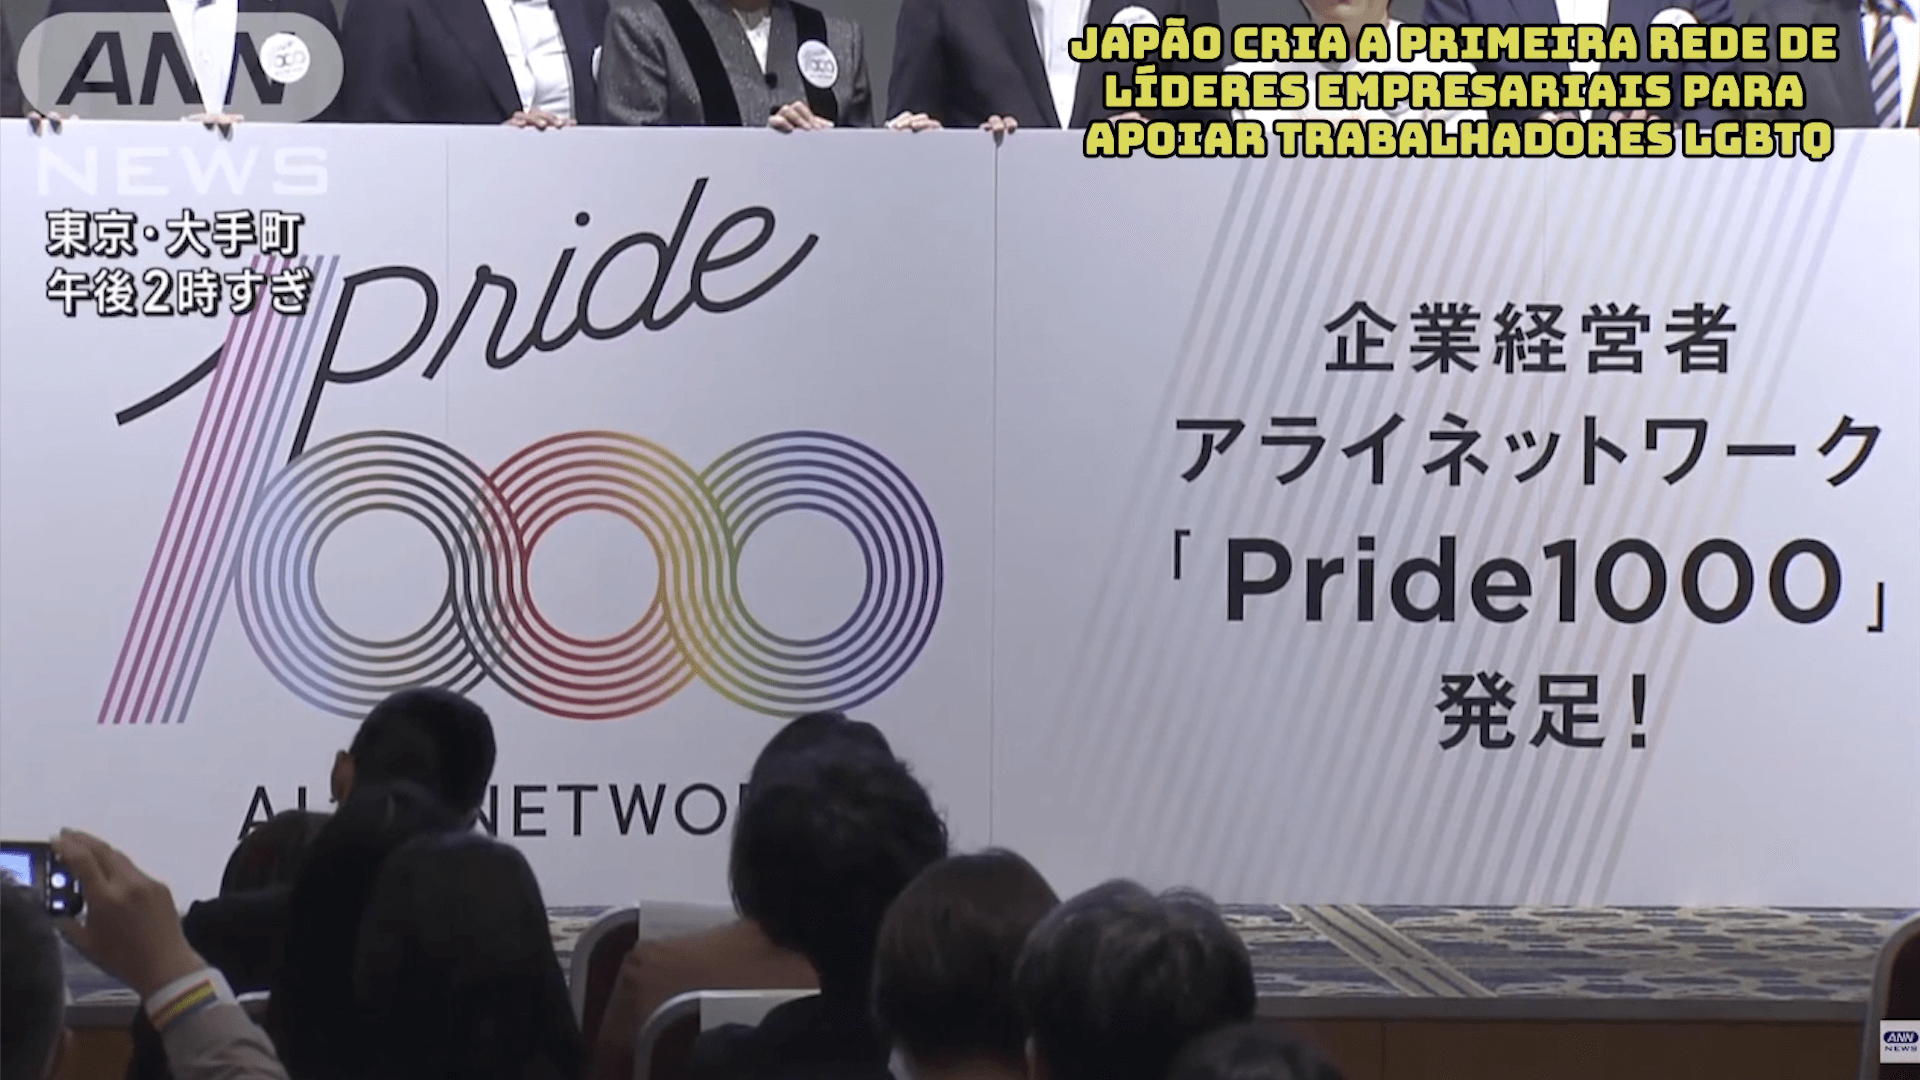 Japão cria a primeira Rede de Líderes Empresariais para apoiar trabalhadores LGBTQ